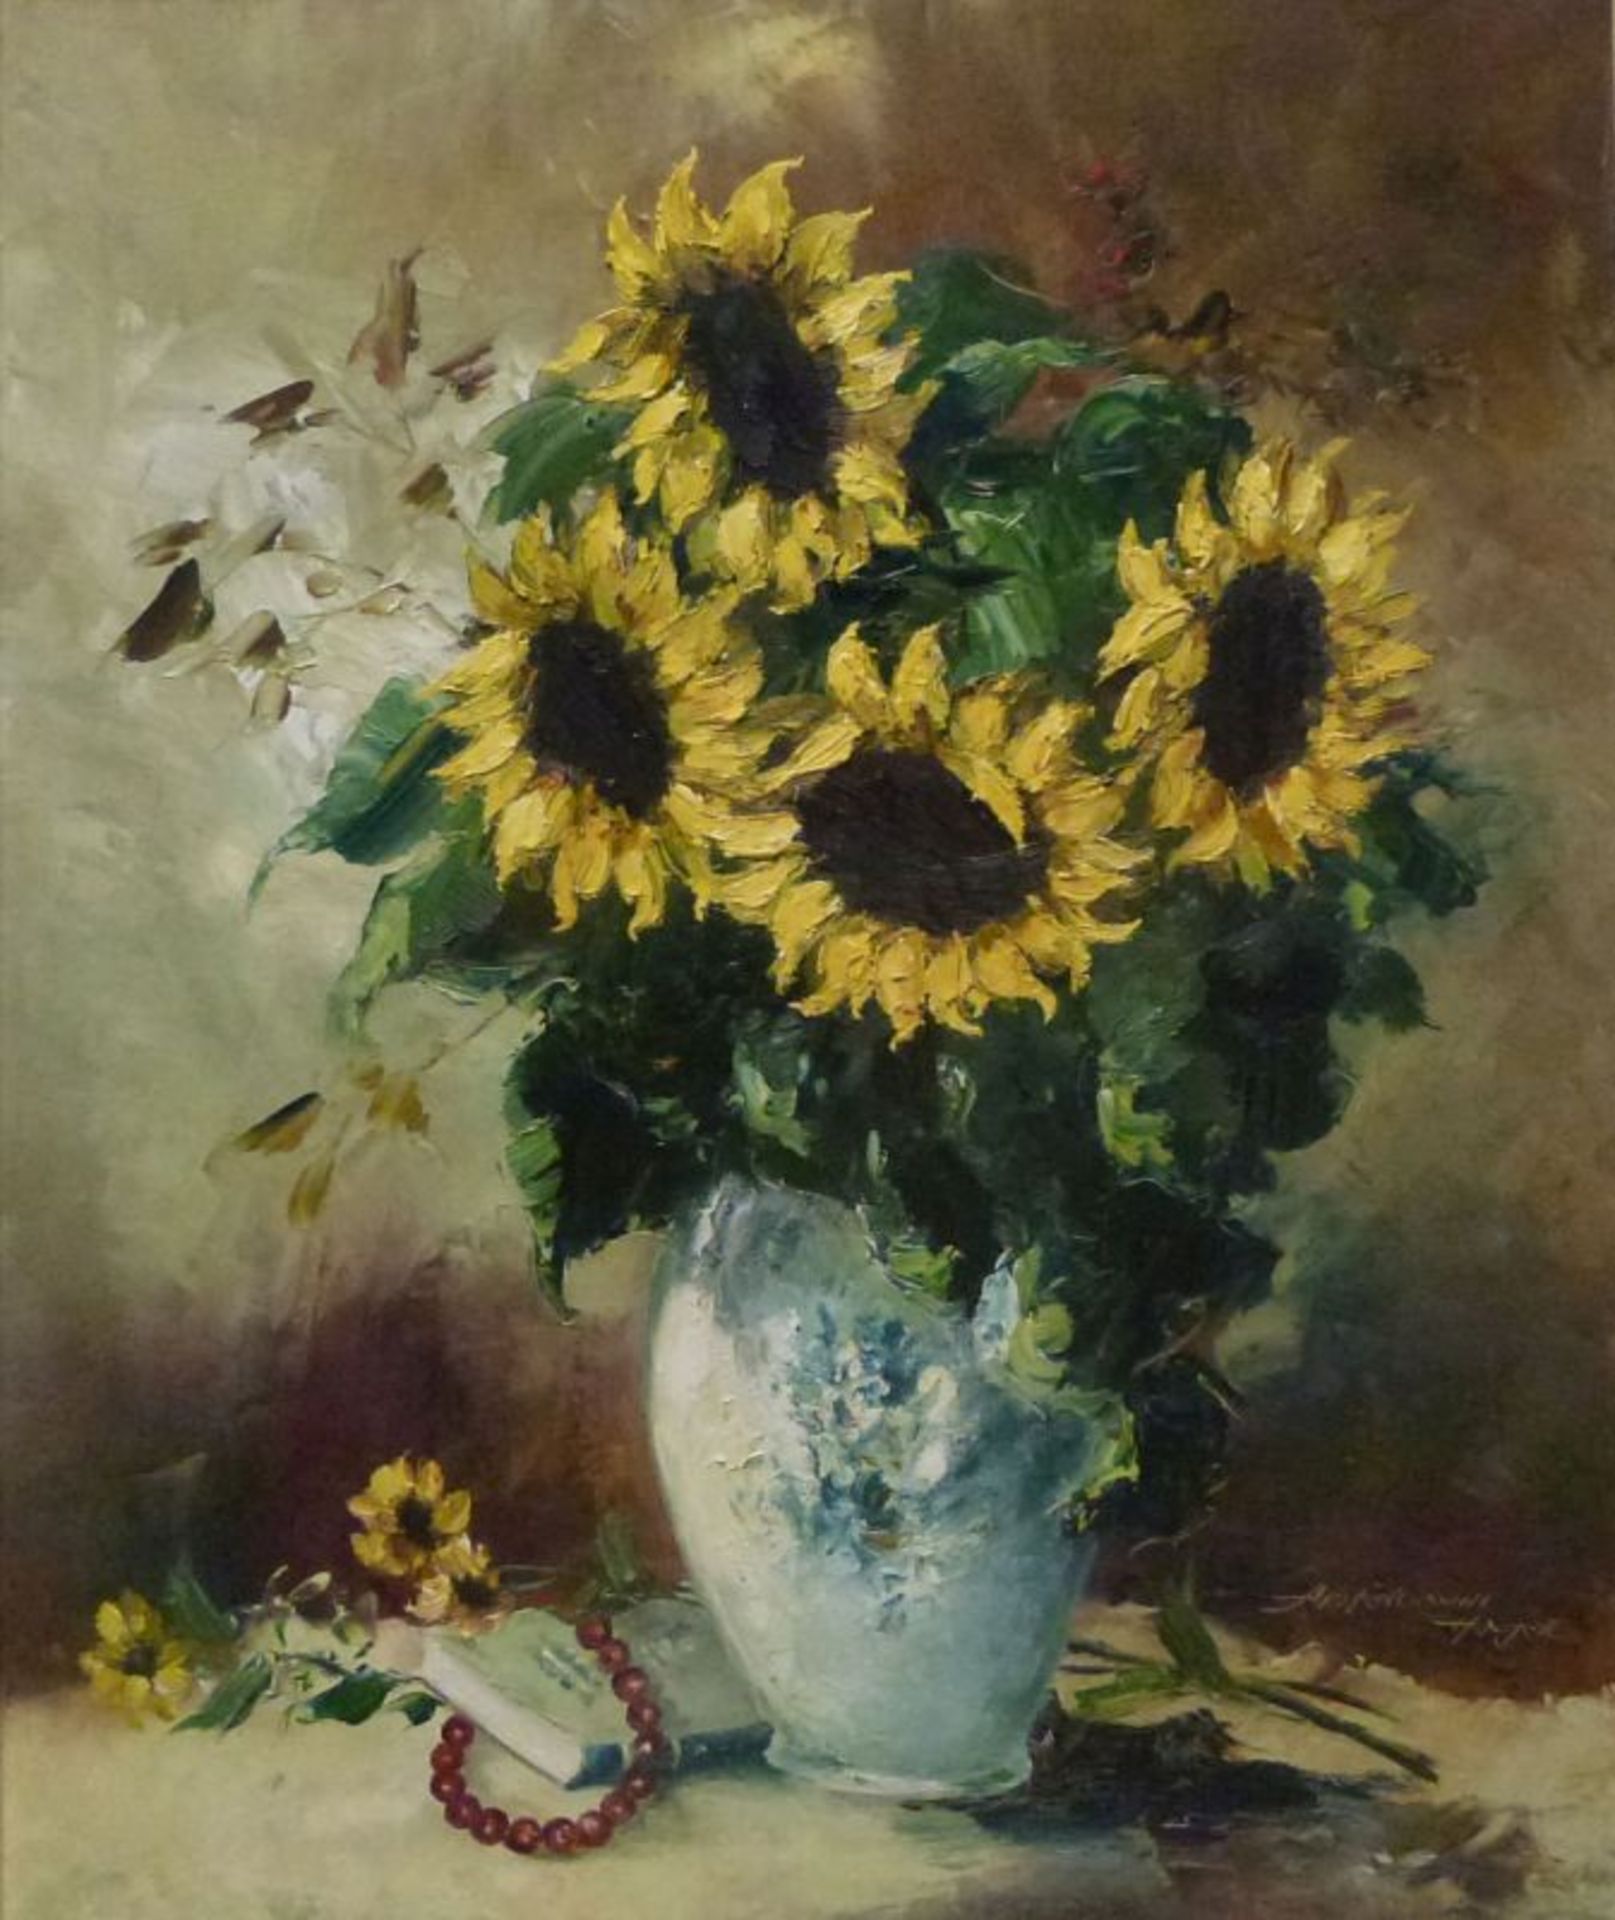 SonnenblumenFriedrich Adolf Apfelbaum, 1904-'74SonnenblumenÖl/LW, sign., Strauß in Vase, 60x50 cm,